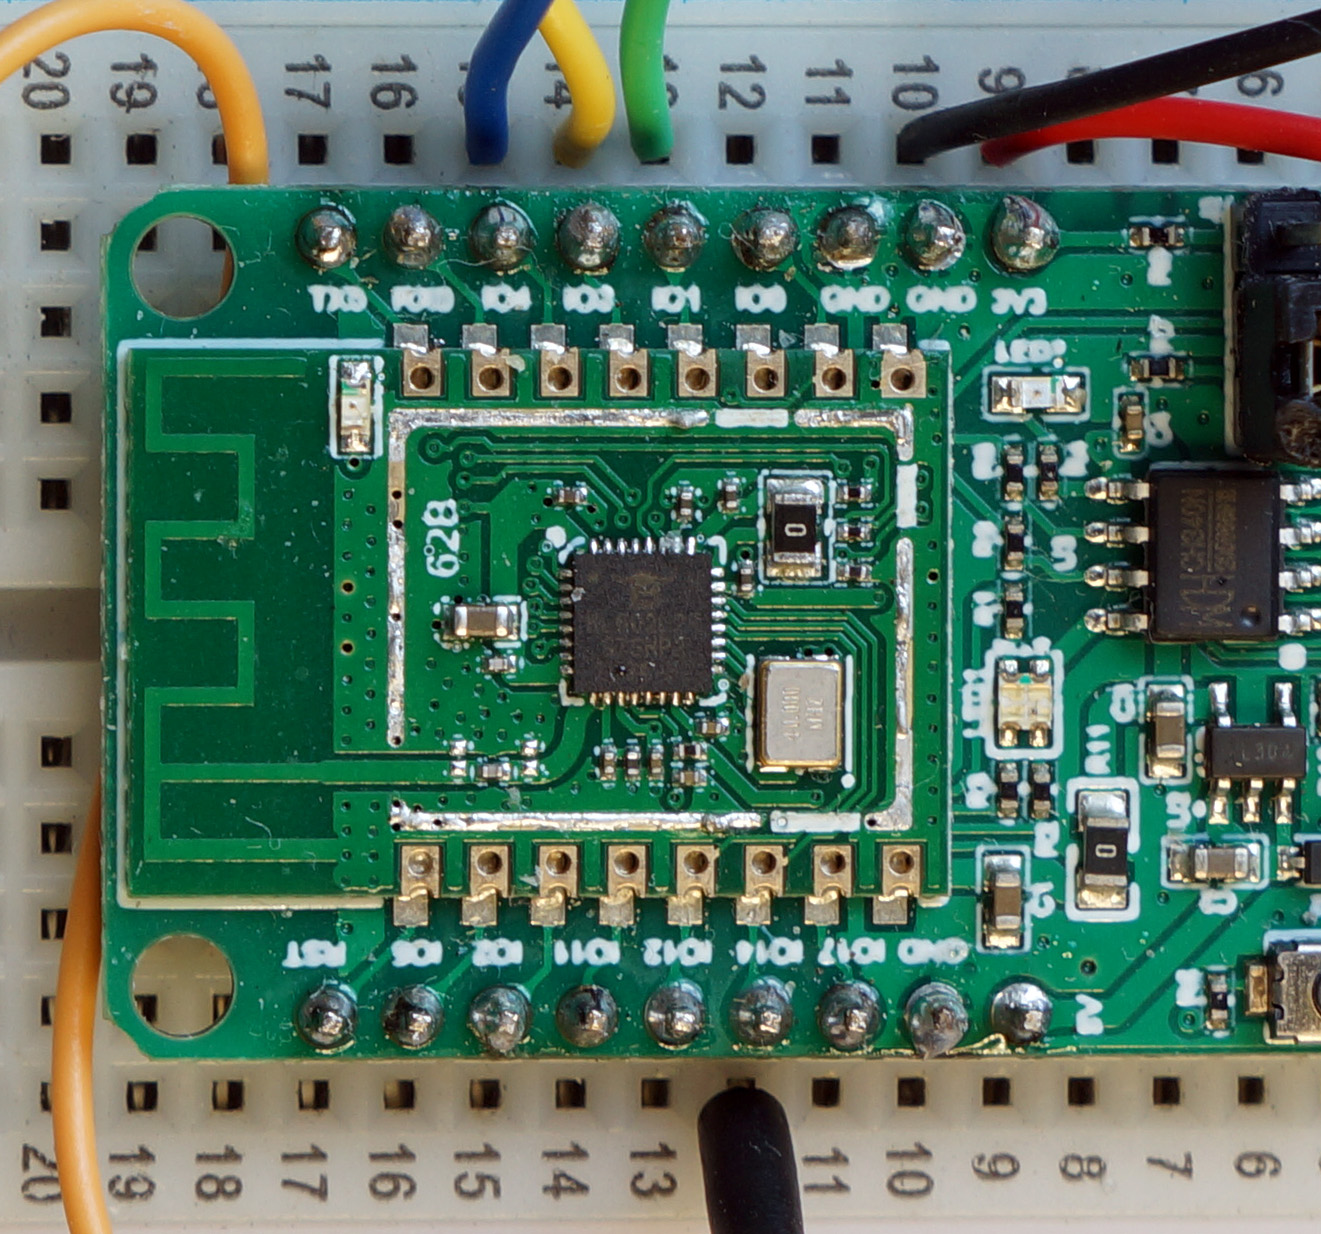 BL602 SPI Pins 1 (SDI), 3 (Clock), 4 (SDO) and 14 (Chip Select)